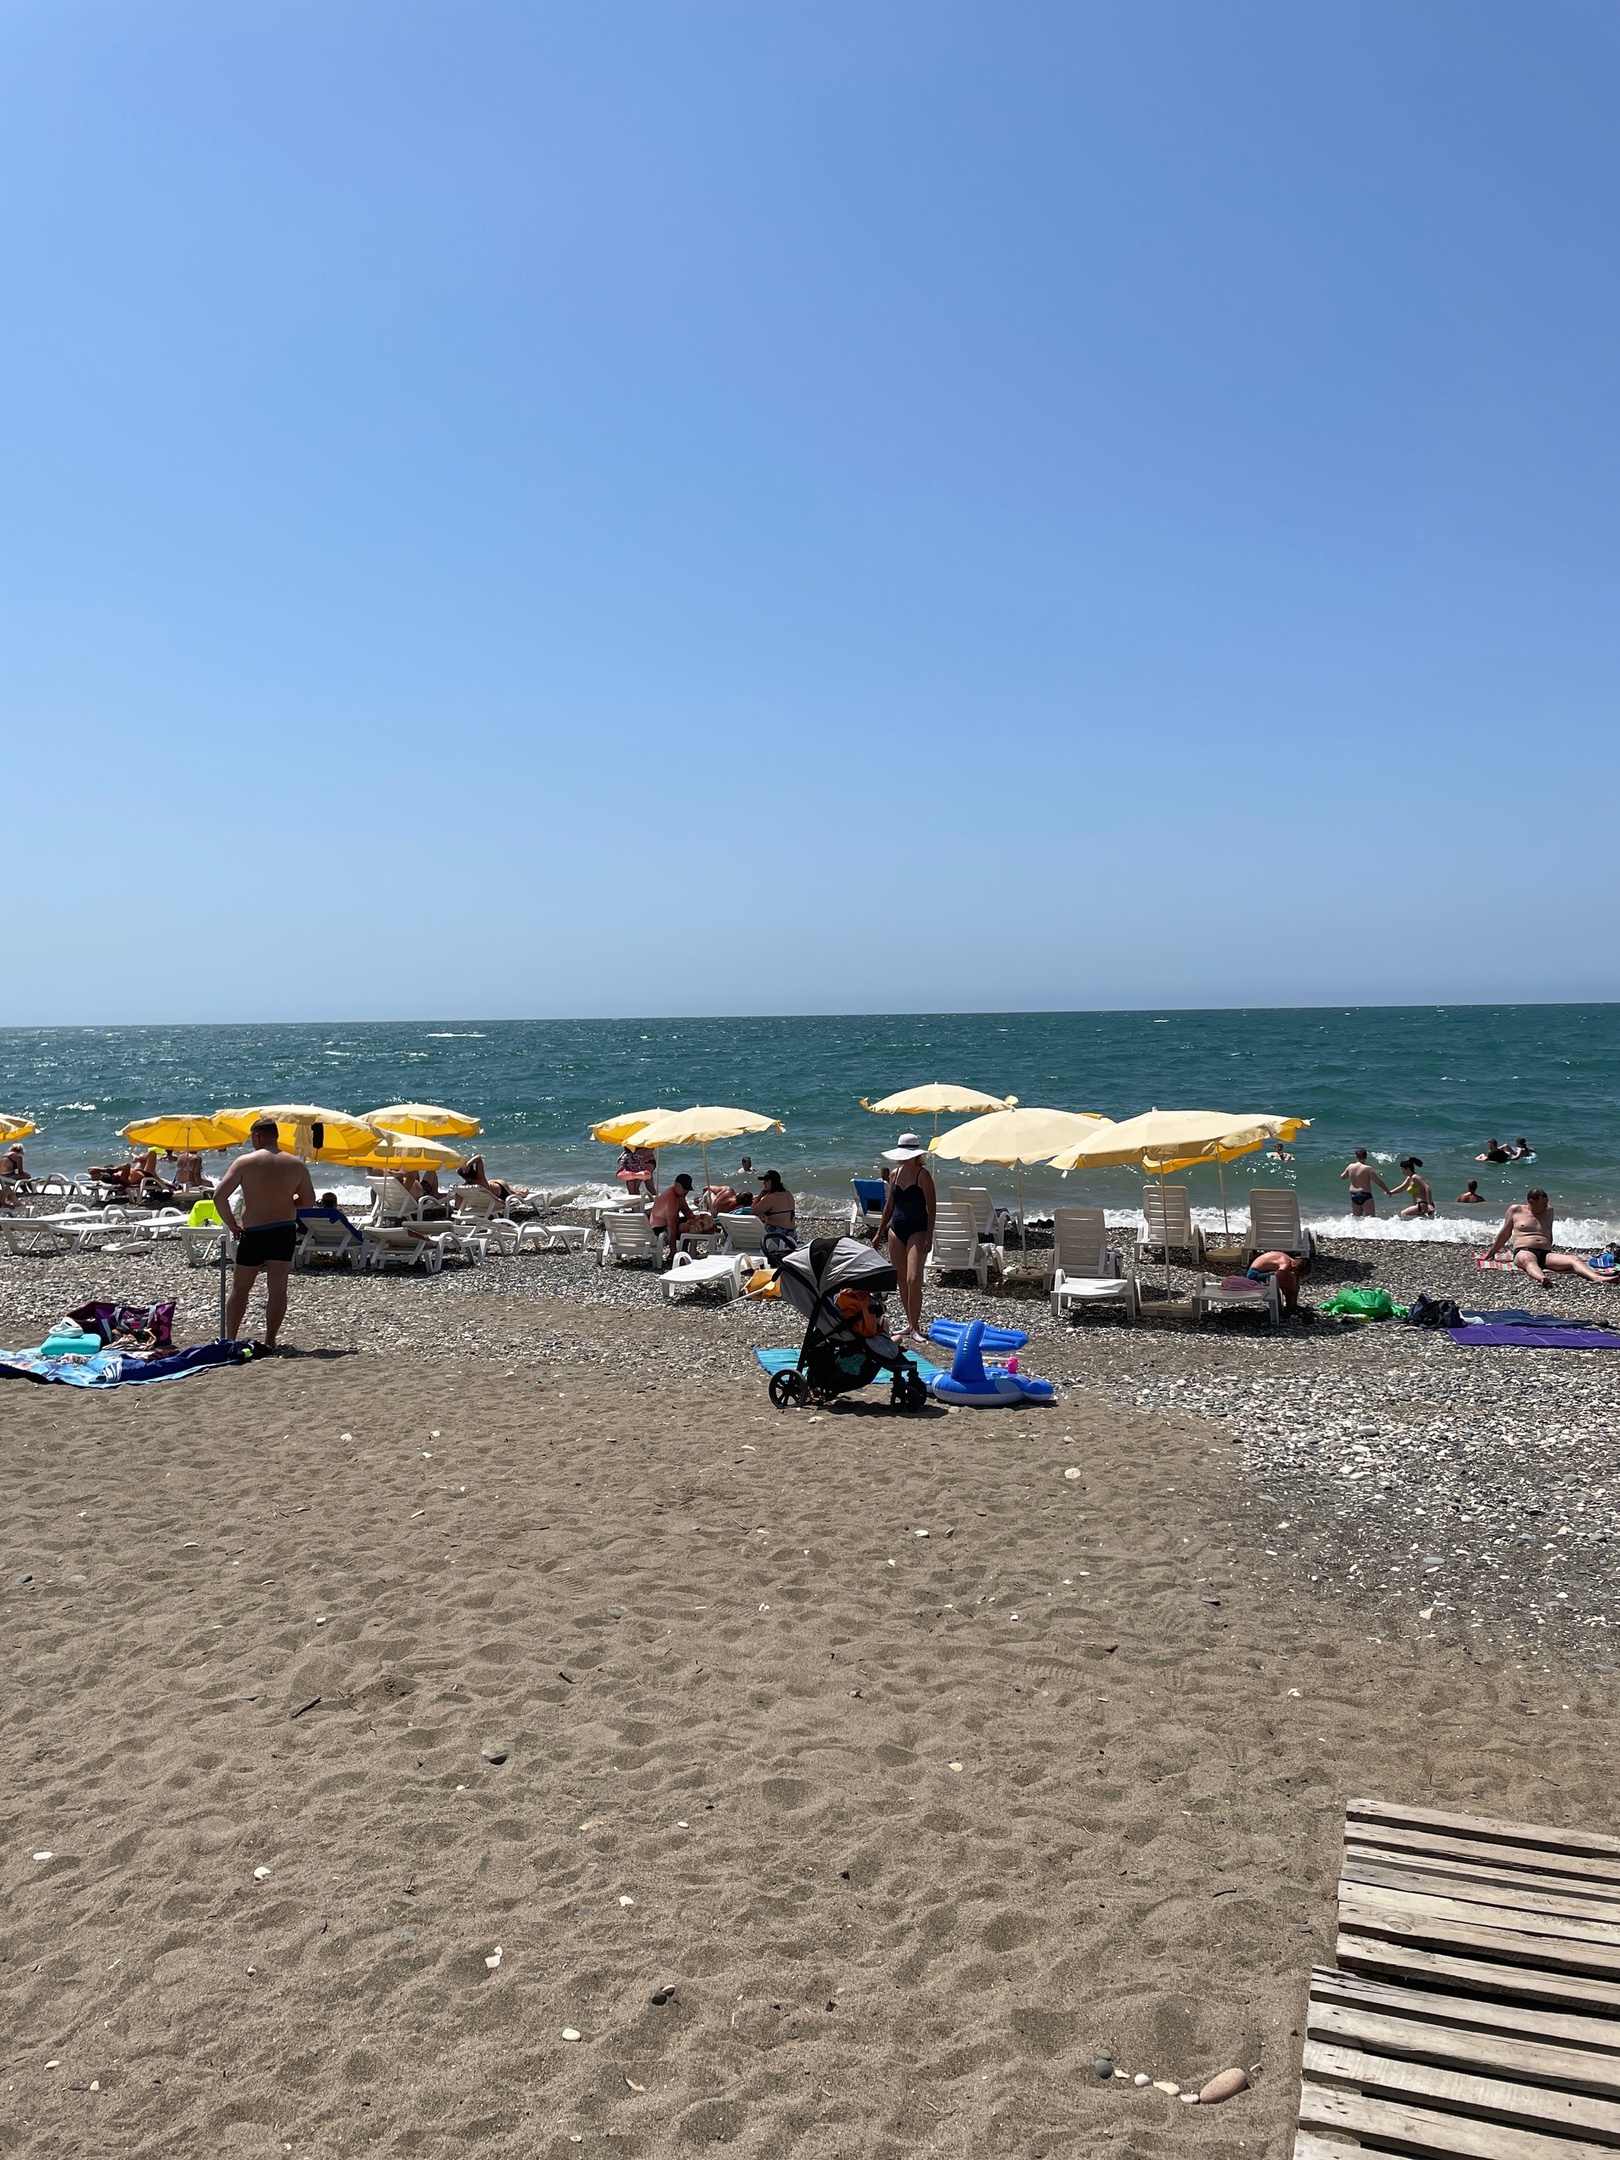 "Купаться невозможно, мы все сидим на берегу": Черное море преподнесло неприятный сюрприз отдыхающим